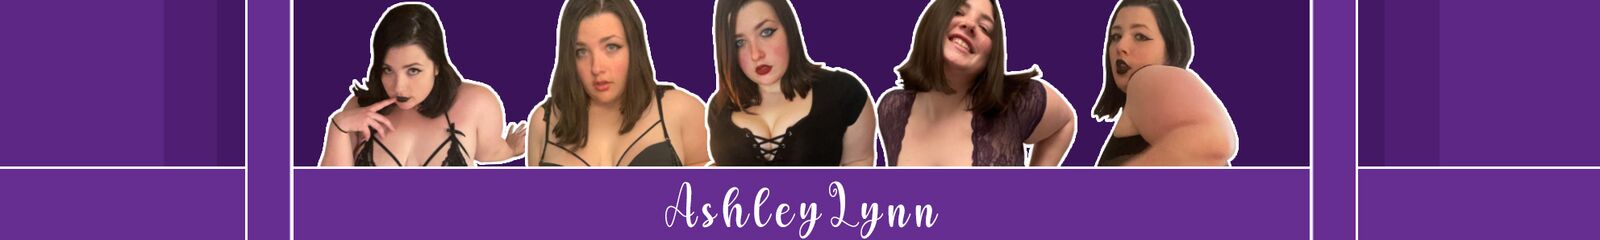 Ashley Lynn